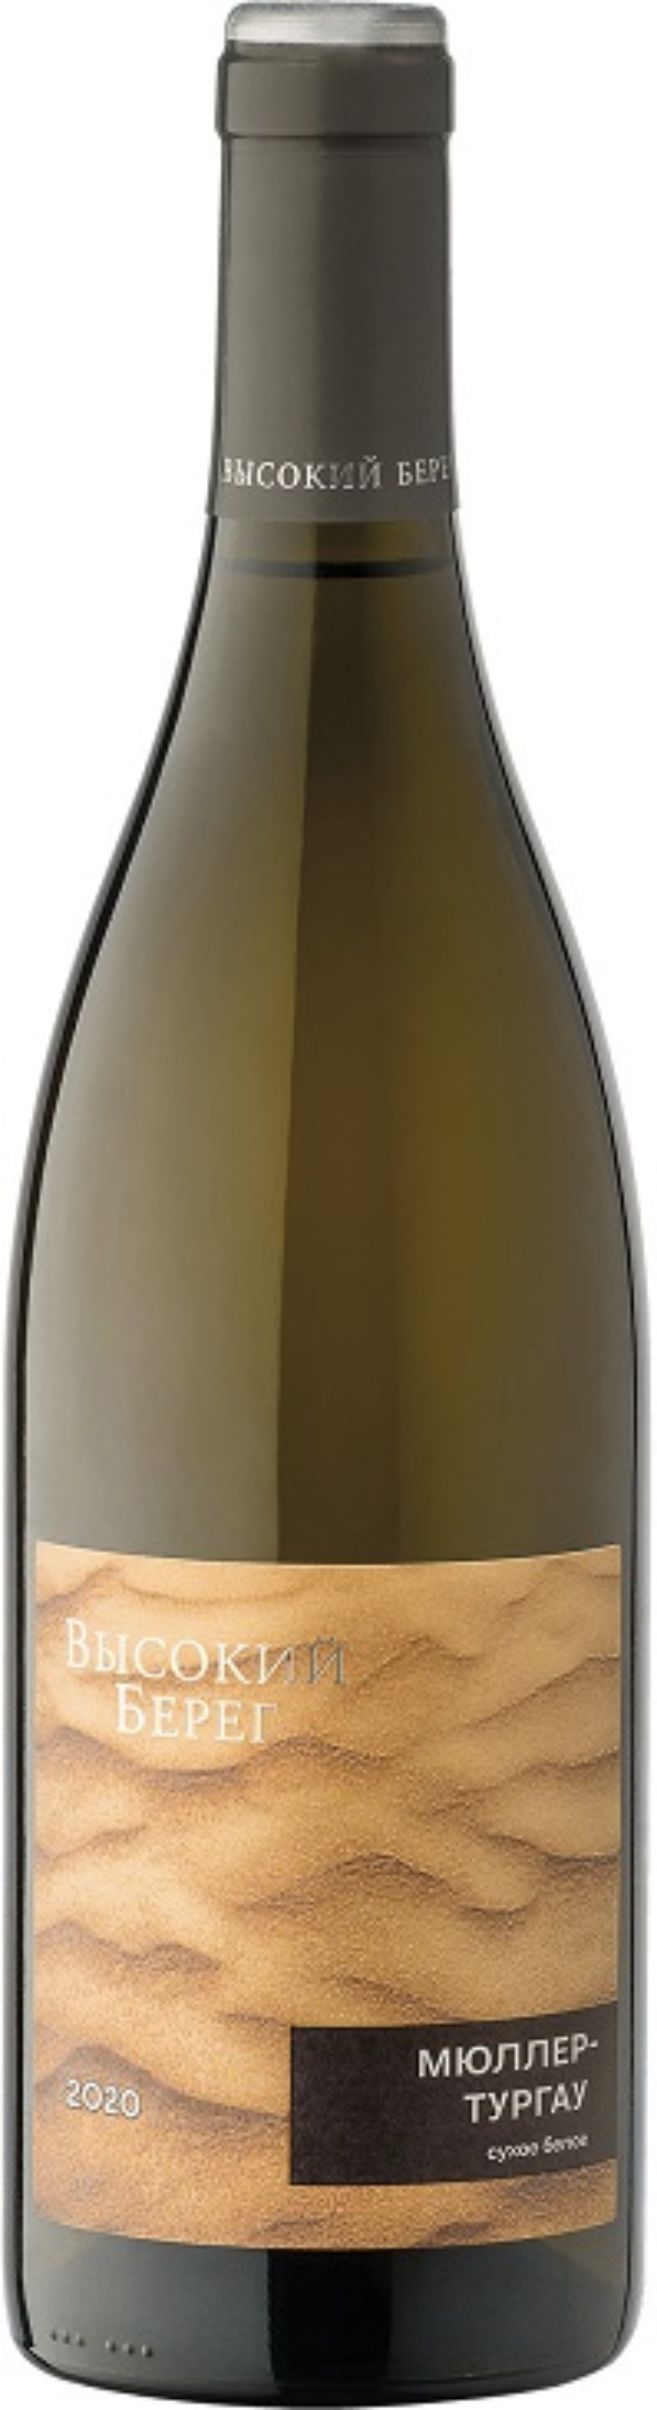 Вино с защищенным географическим указанием "Кубань" сухое белое "Высокий берег. Мюллер-Тургау"  креп 13%, емк 0,75л